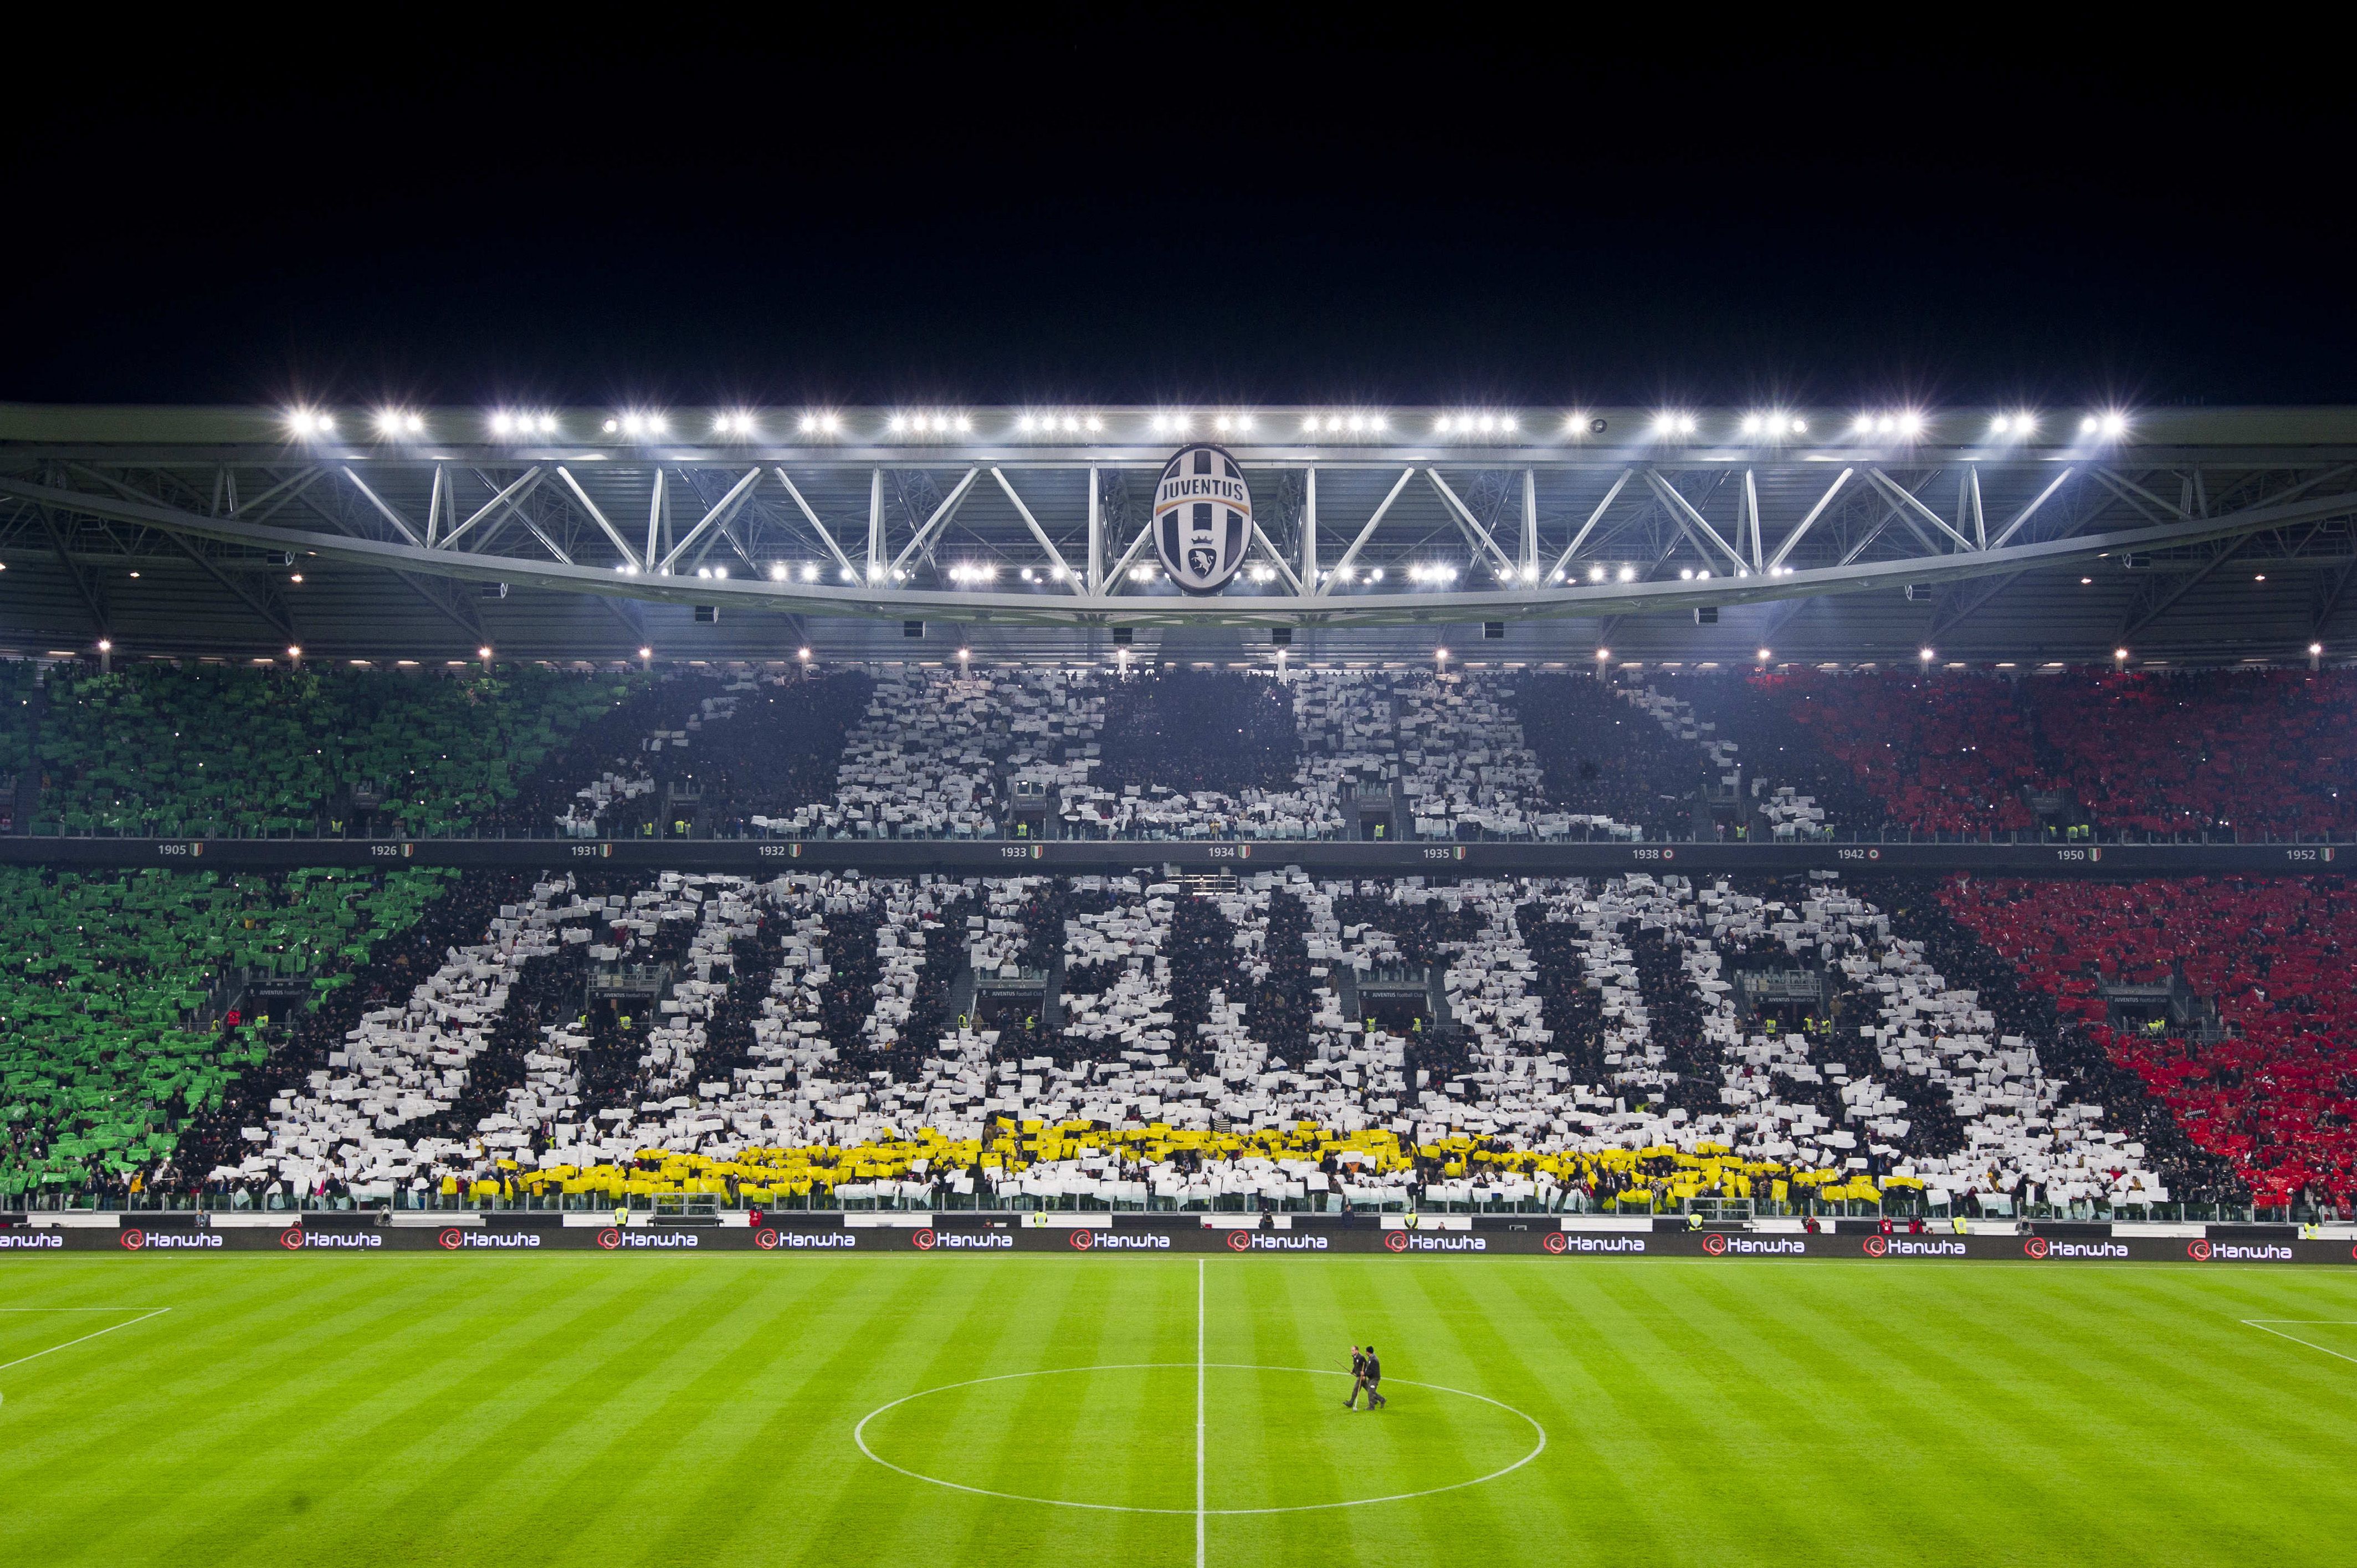 Wallpaper Juventus